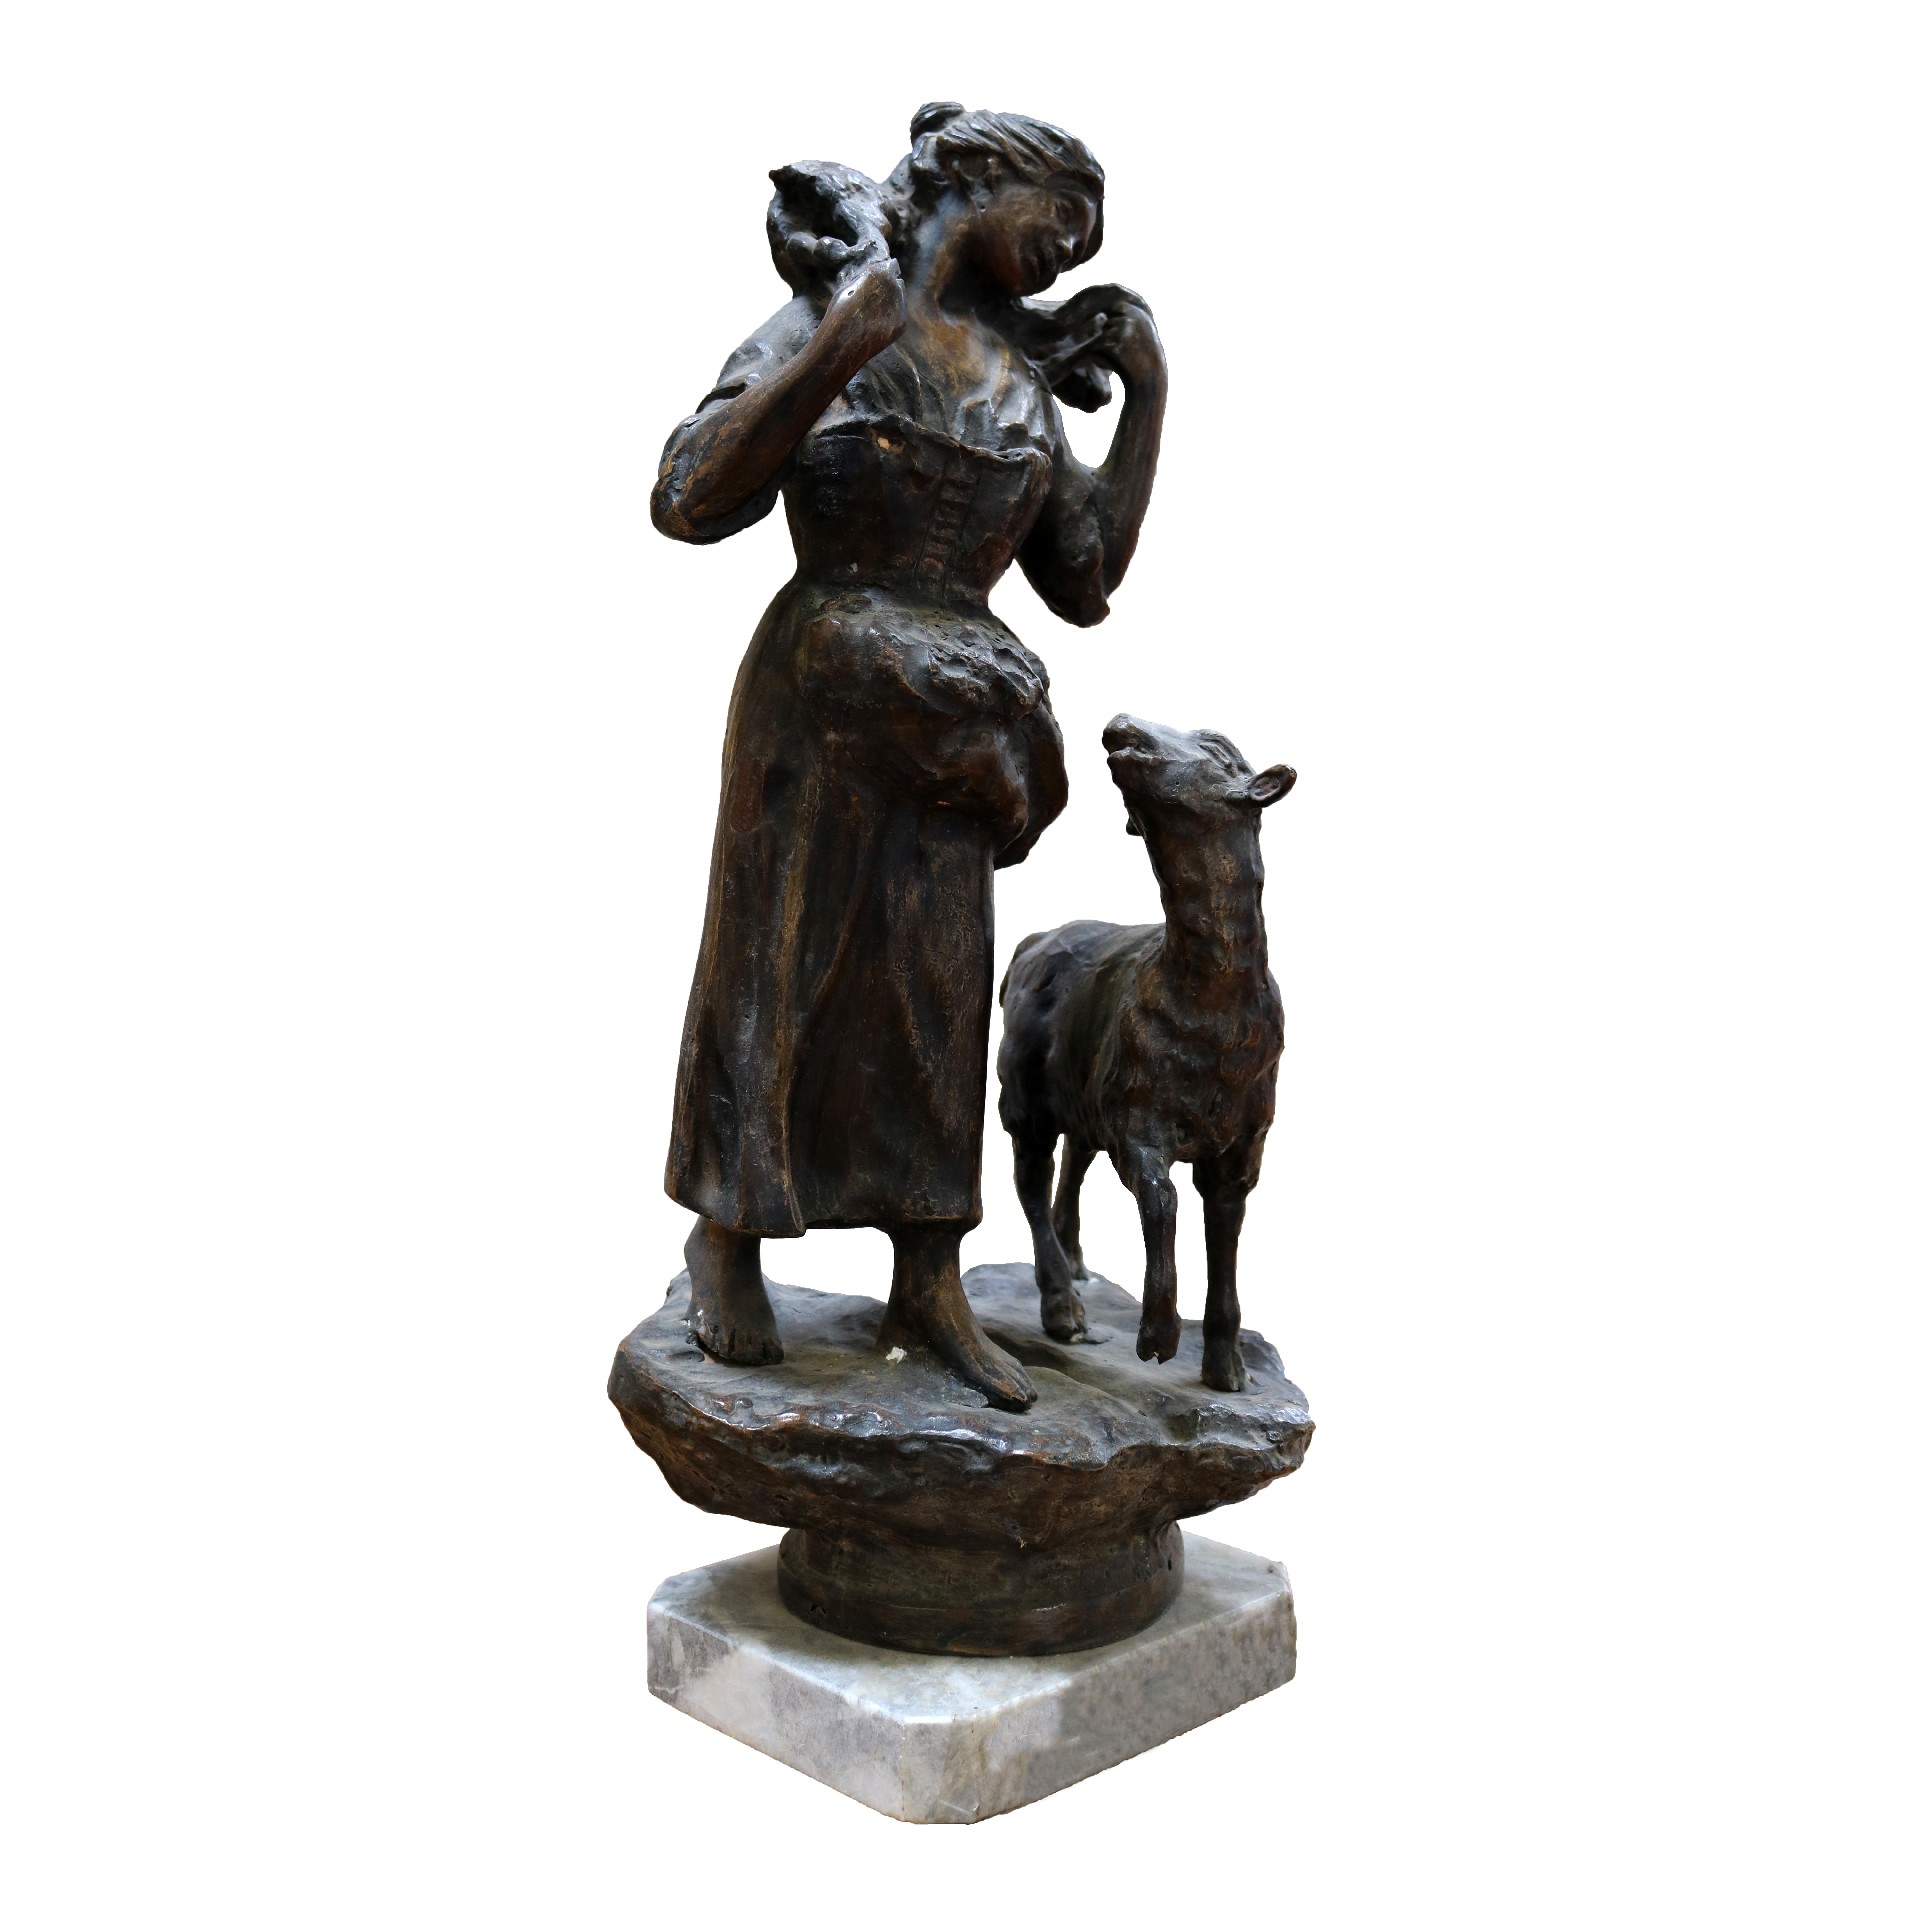 Antica scultura in bronzo. Epoca inizi 1900. - Bronzi - Sculture Antiche - Prodotti - Antichità Fiorillo